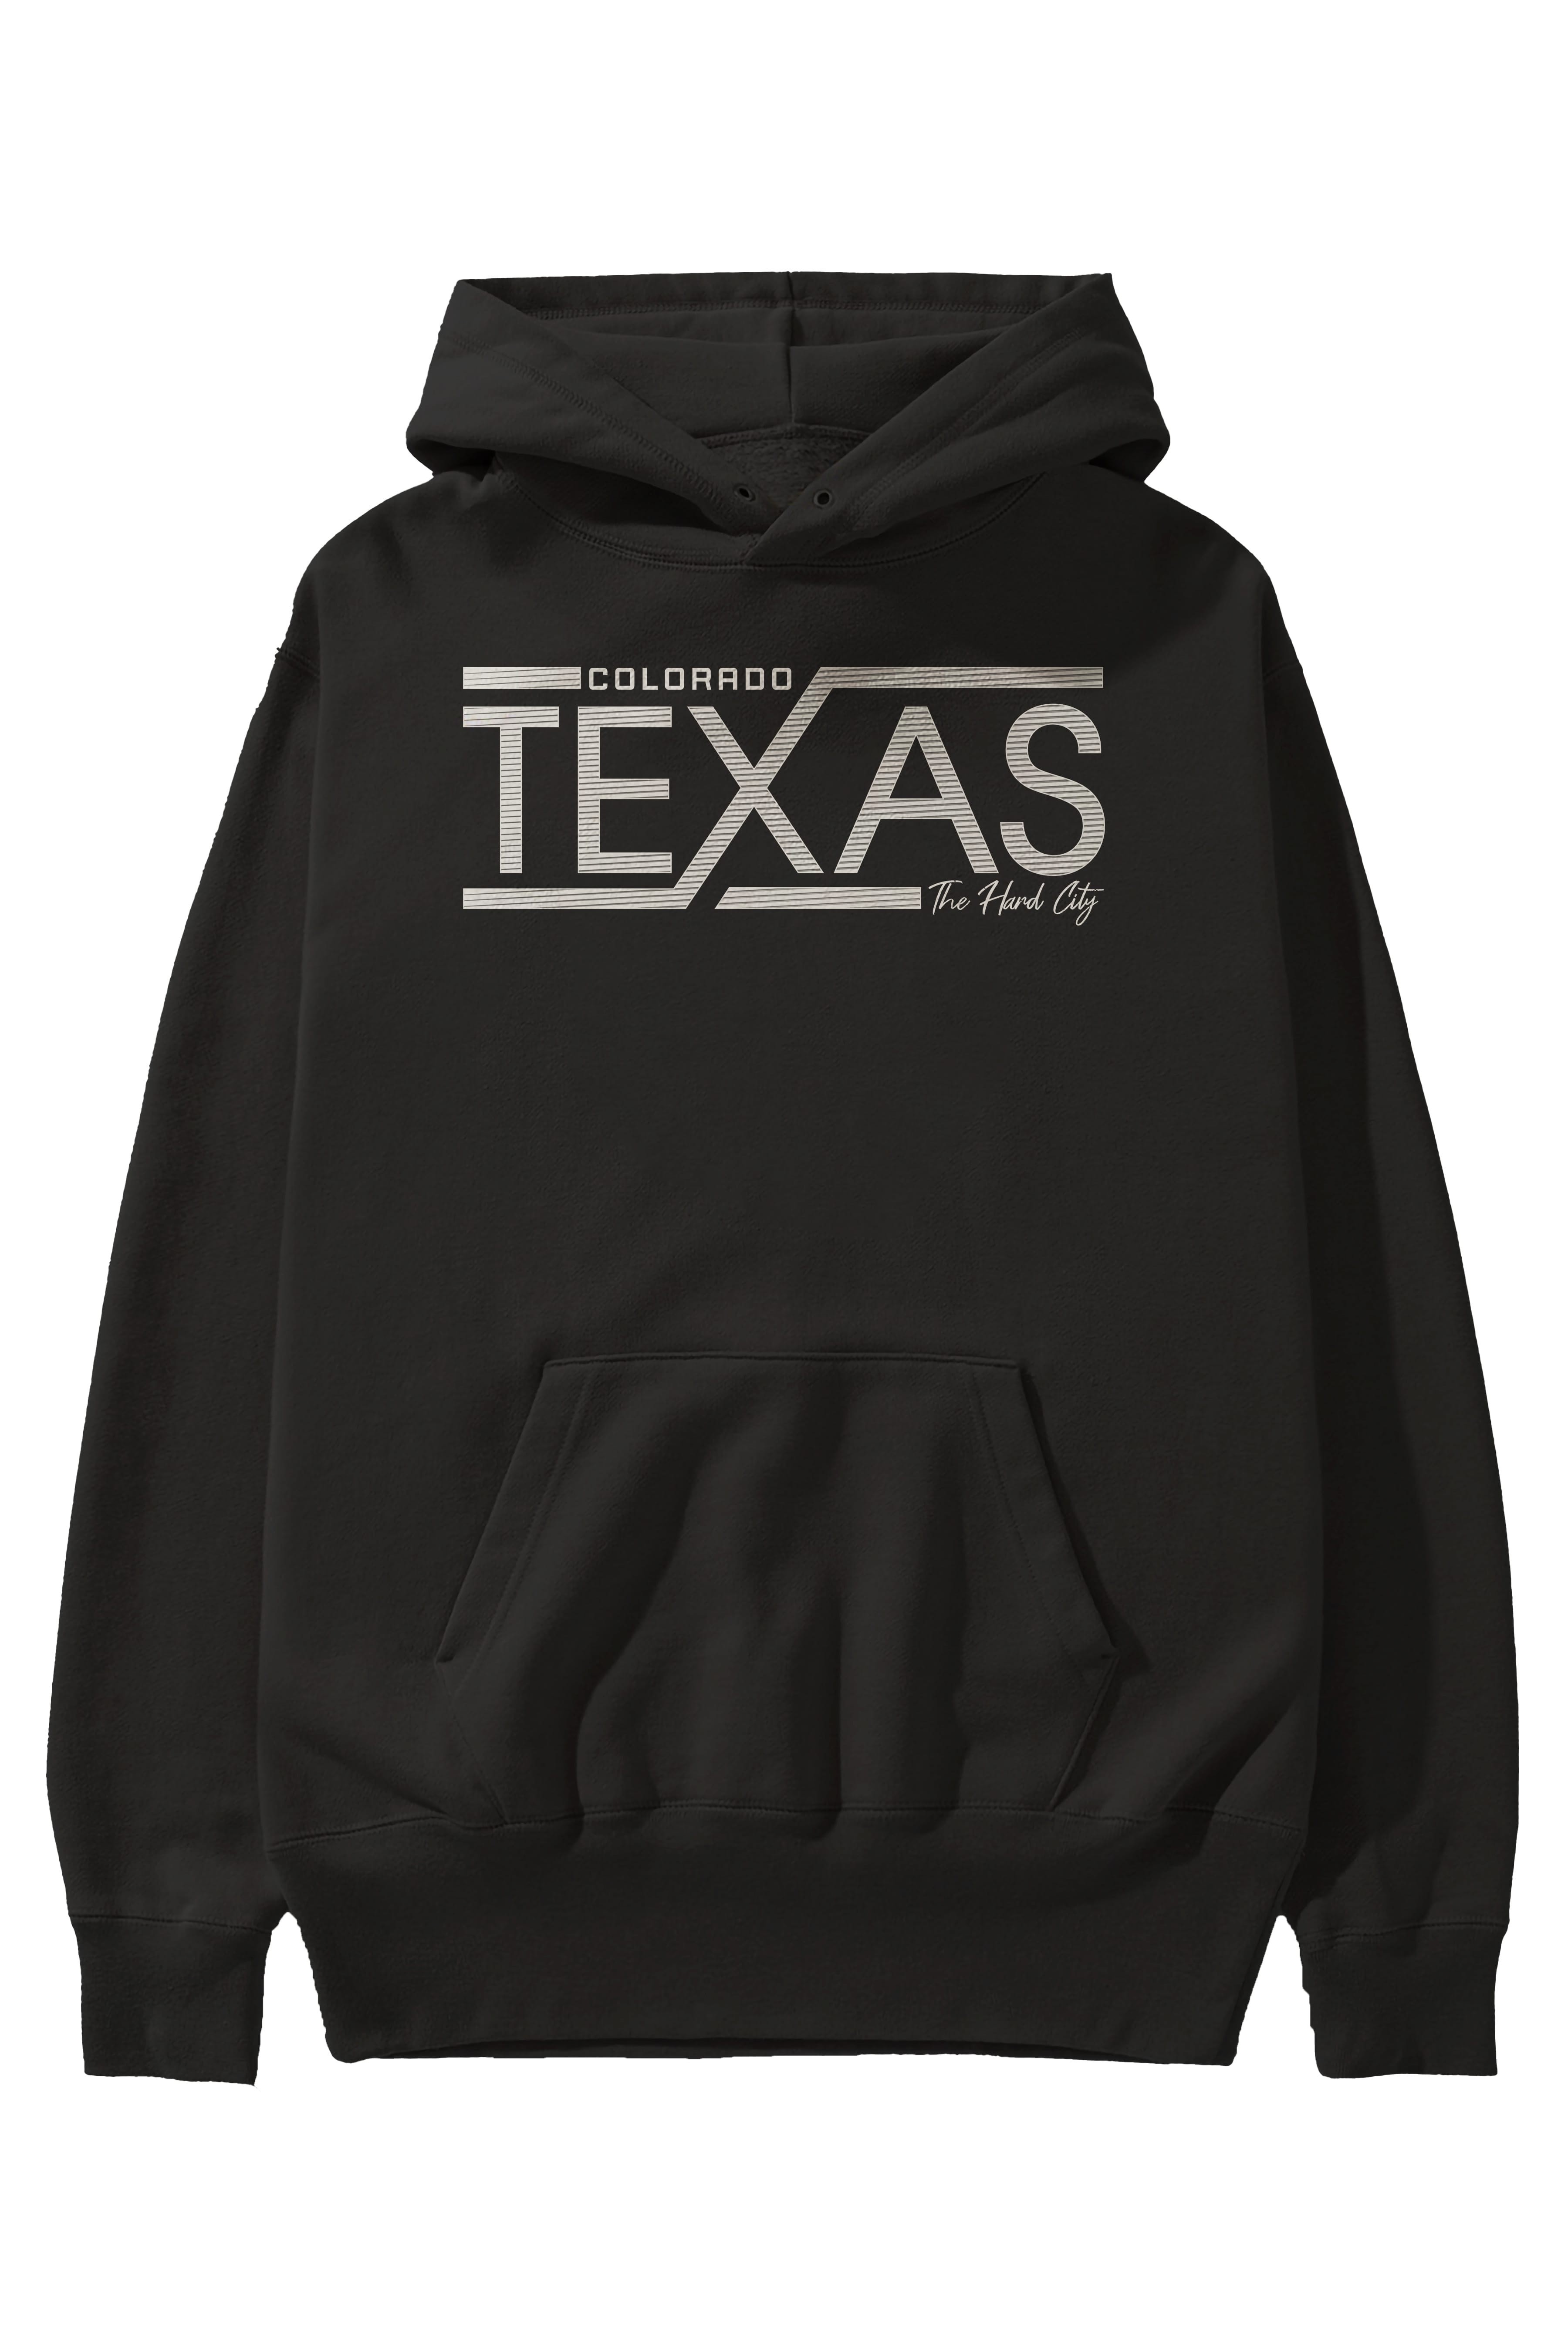 Texas Ön Baskılı Oversize Hoodie Kapüşonlu Sweatshirt Erkek Kadın Unisex